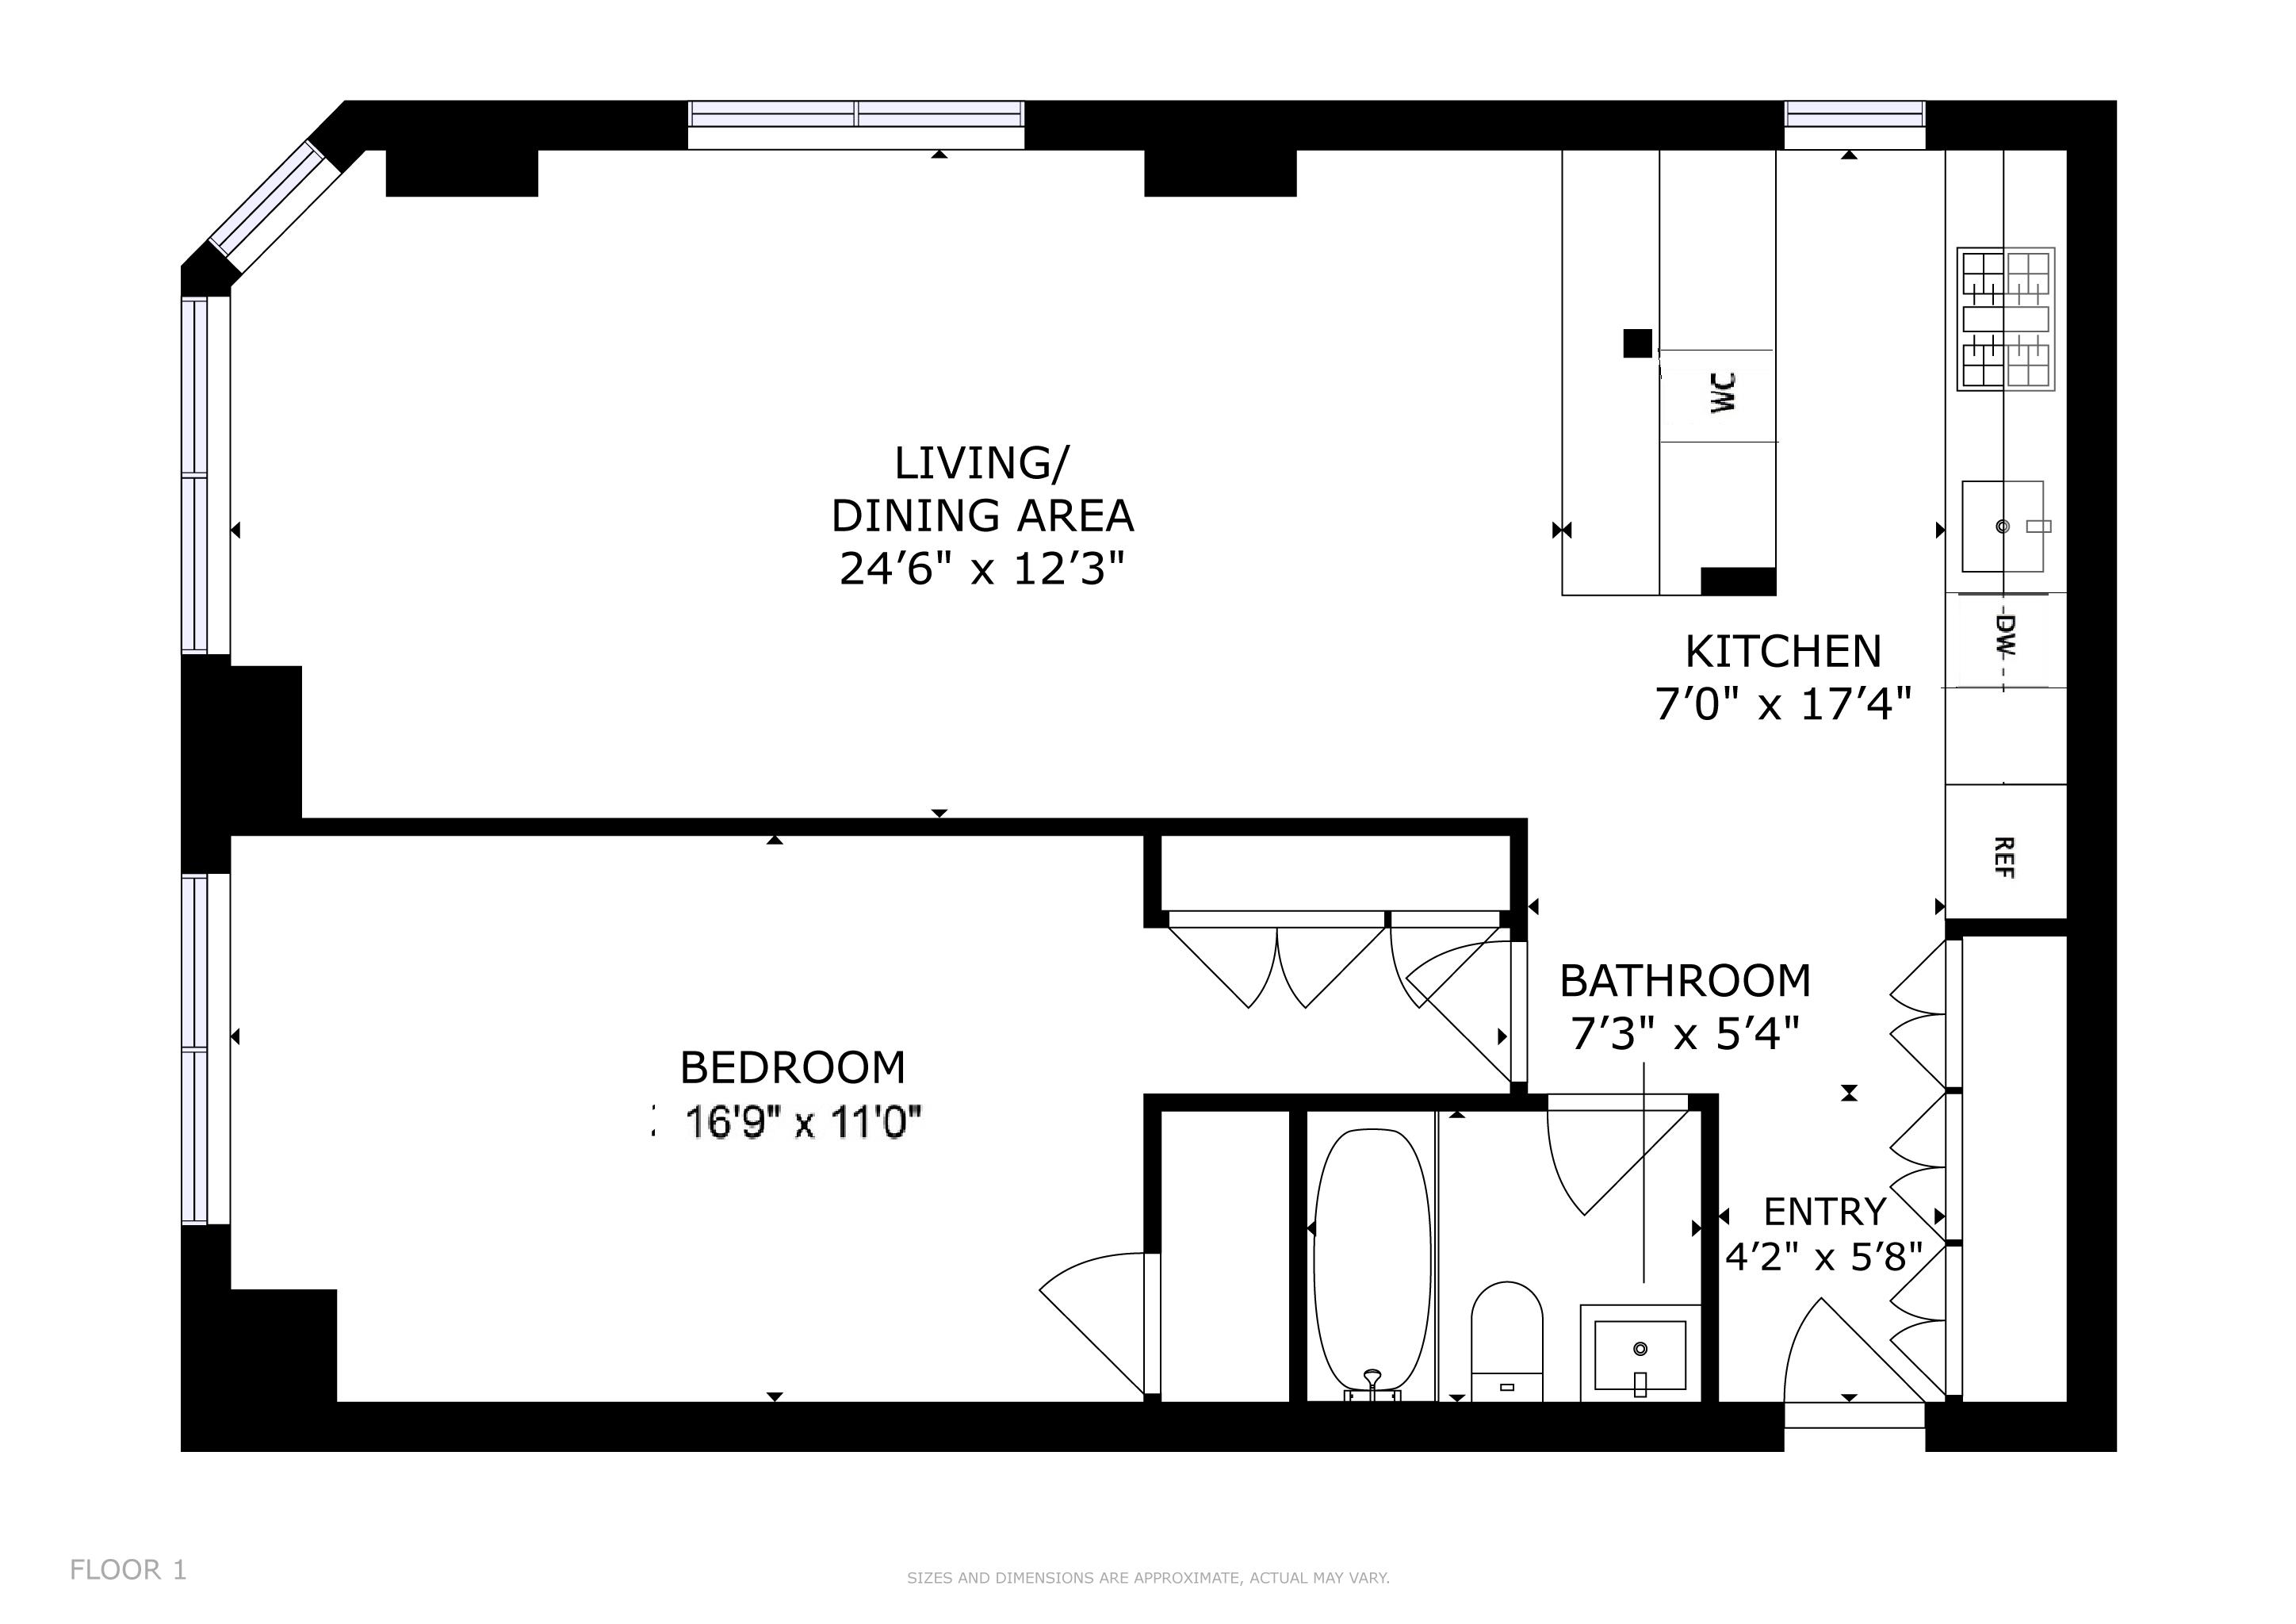 Floorplan for 415 East 37th Street, 42-N